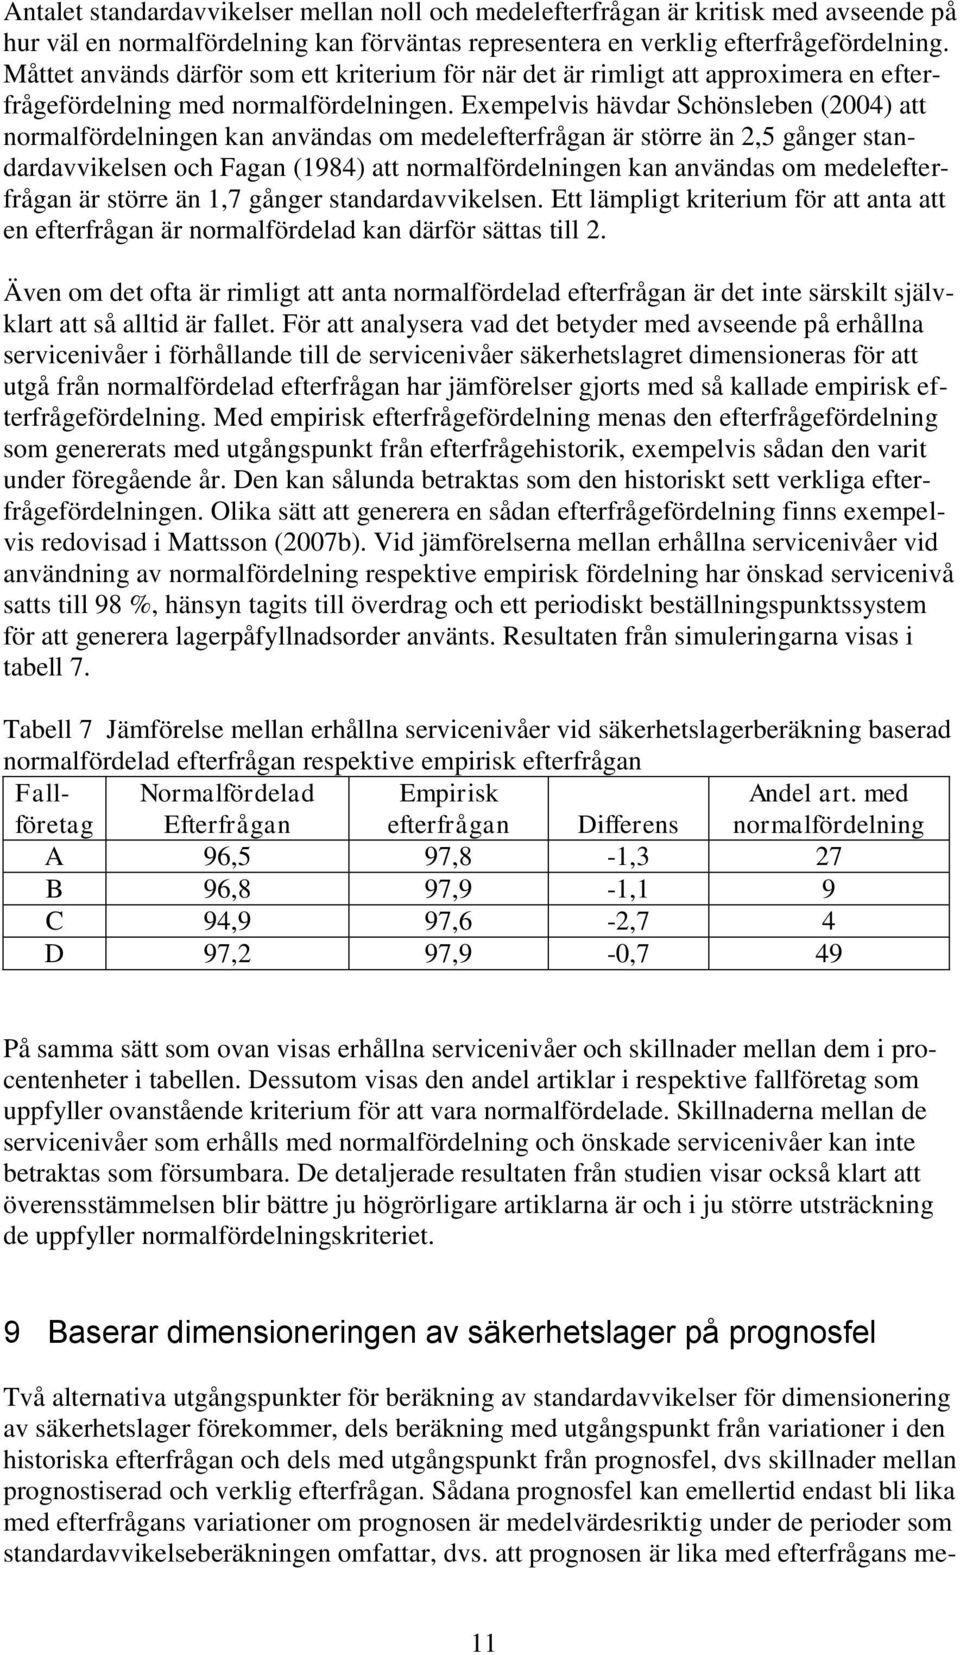 Exempelvis hävdar Schönsleben (2004) att normalfördelningen kan användas om medelefterfrågan är större än 2,5 gånger standardavvikelsen och Fagan (1984) att normalfördelningen kan användas om